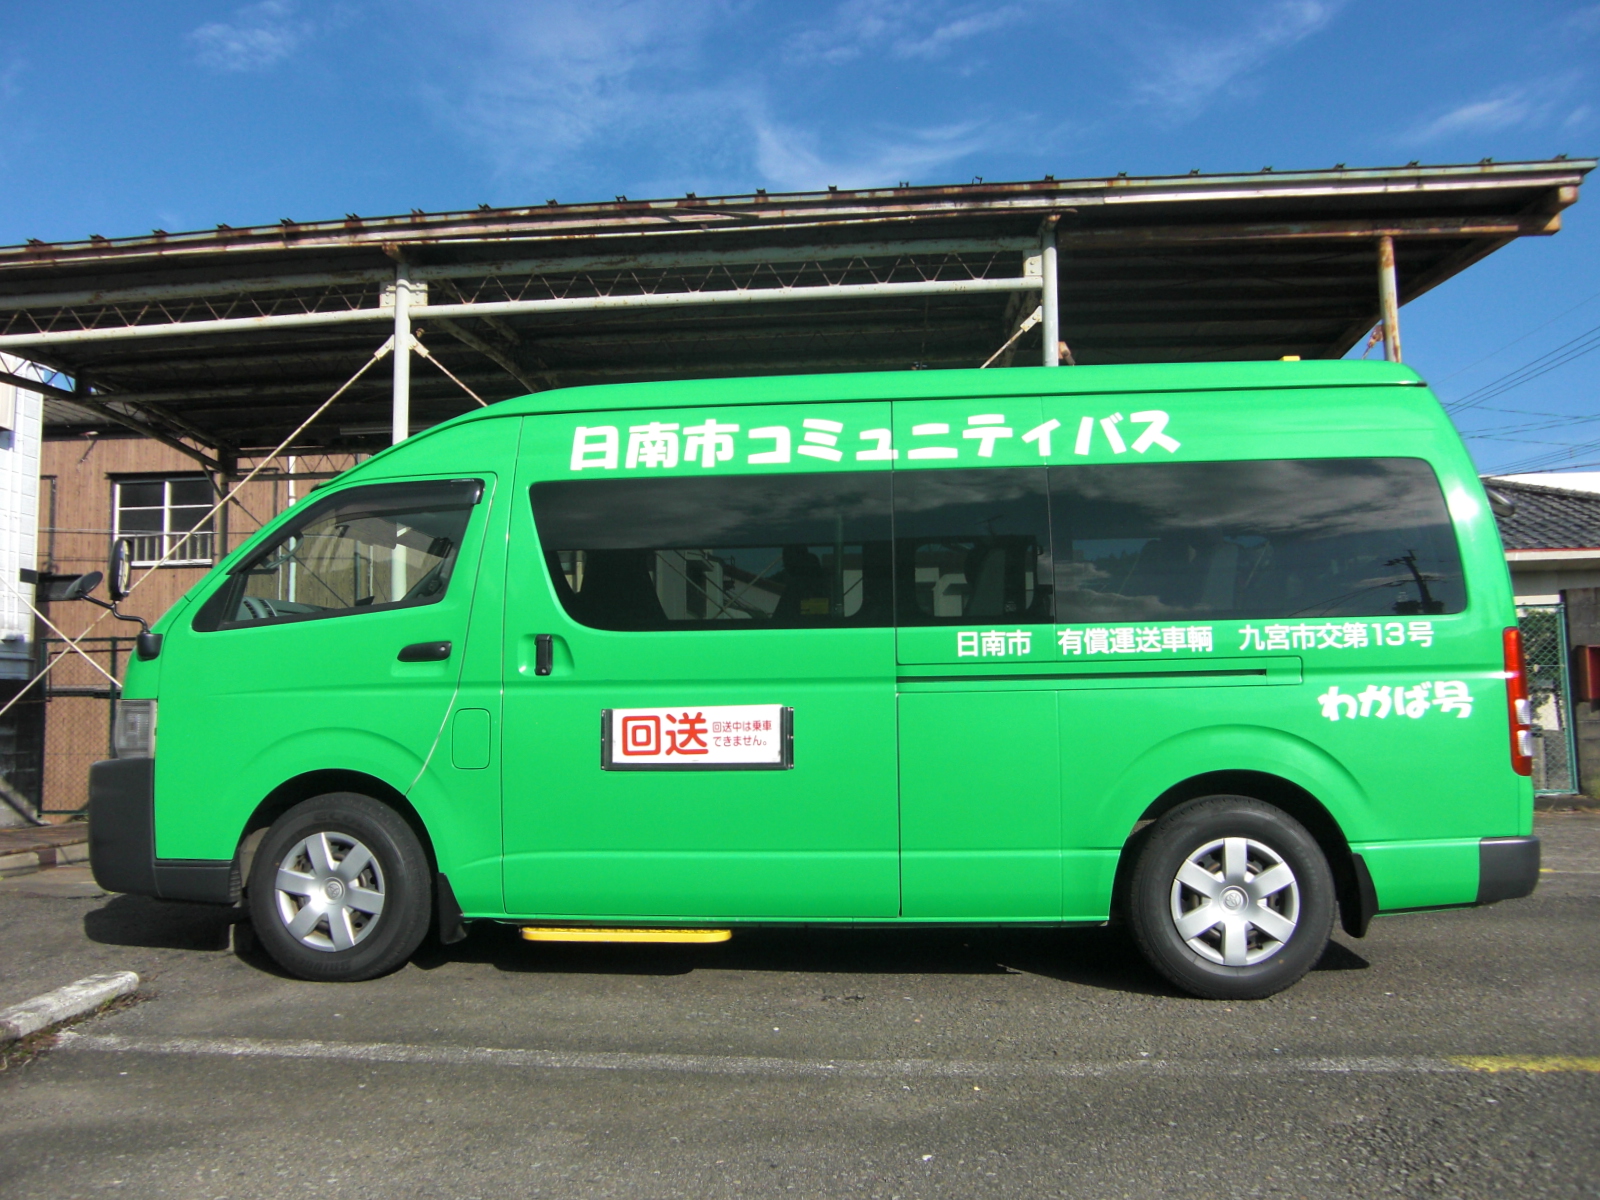 緑色の日南市コミュニティバスわかば号の車体全体を横から写した写真